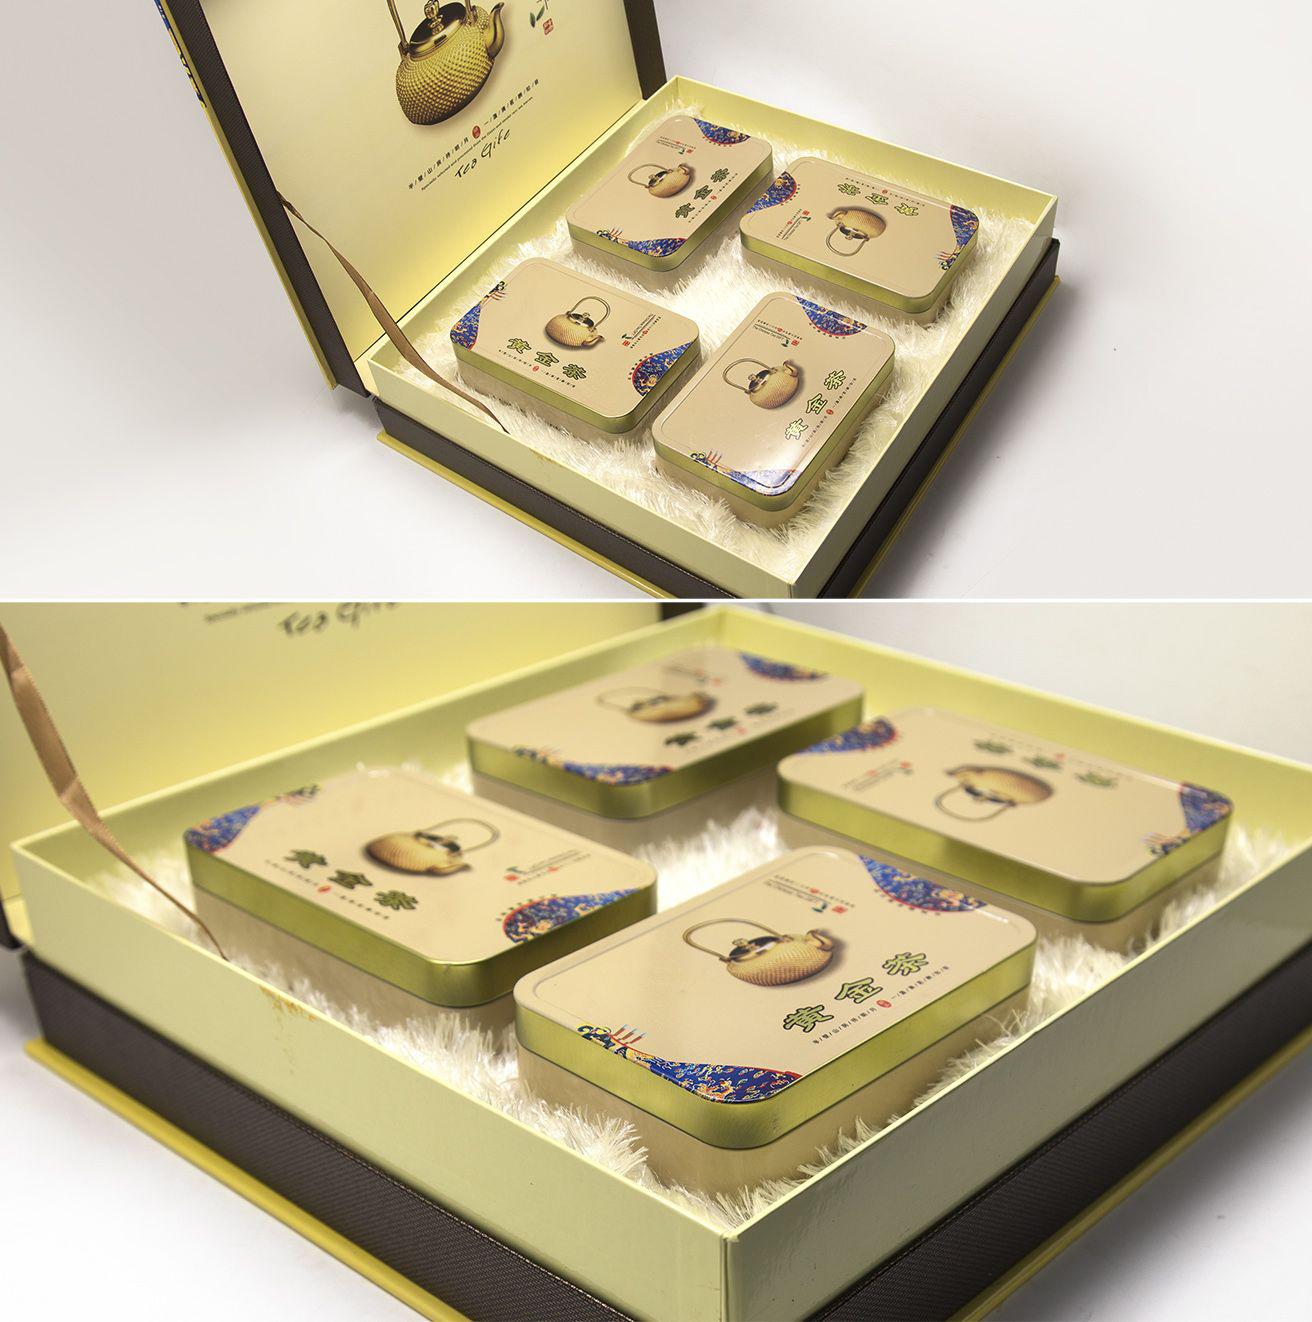 中国传统货币金元宝和盒子-蓝牛仔影像-中国原创广告影像素材